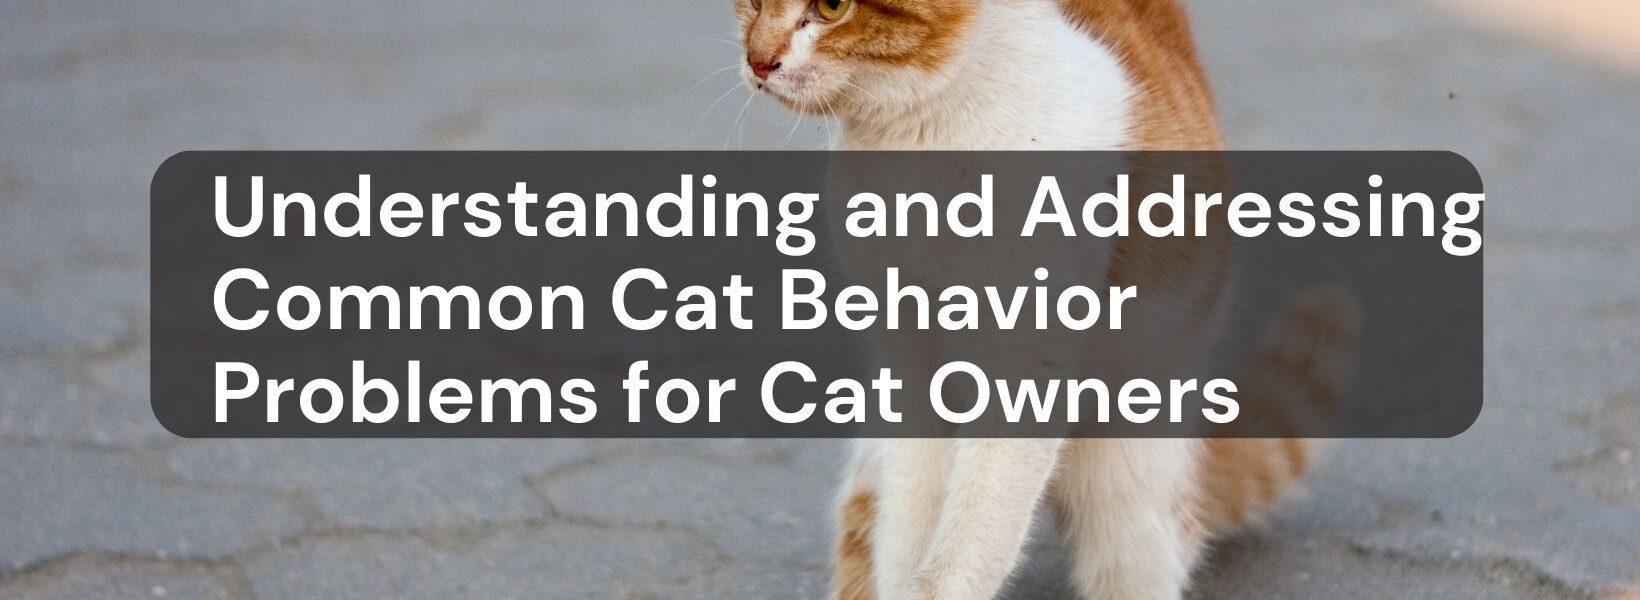 Cat Behavior Problems